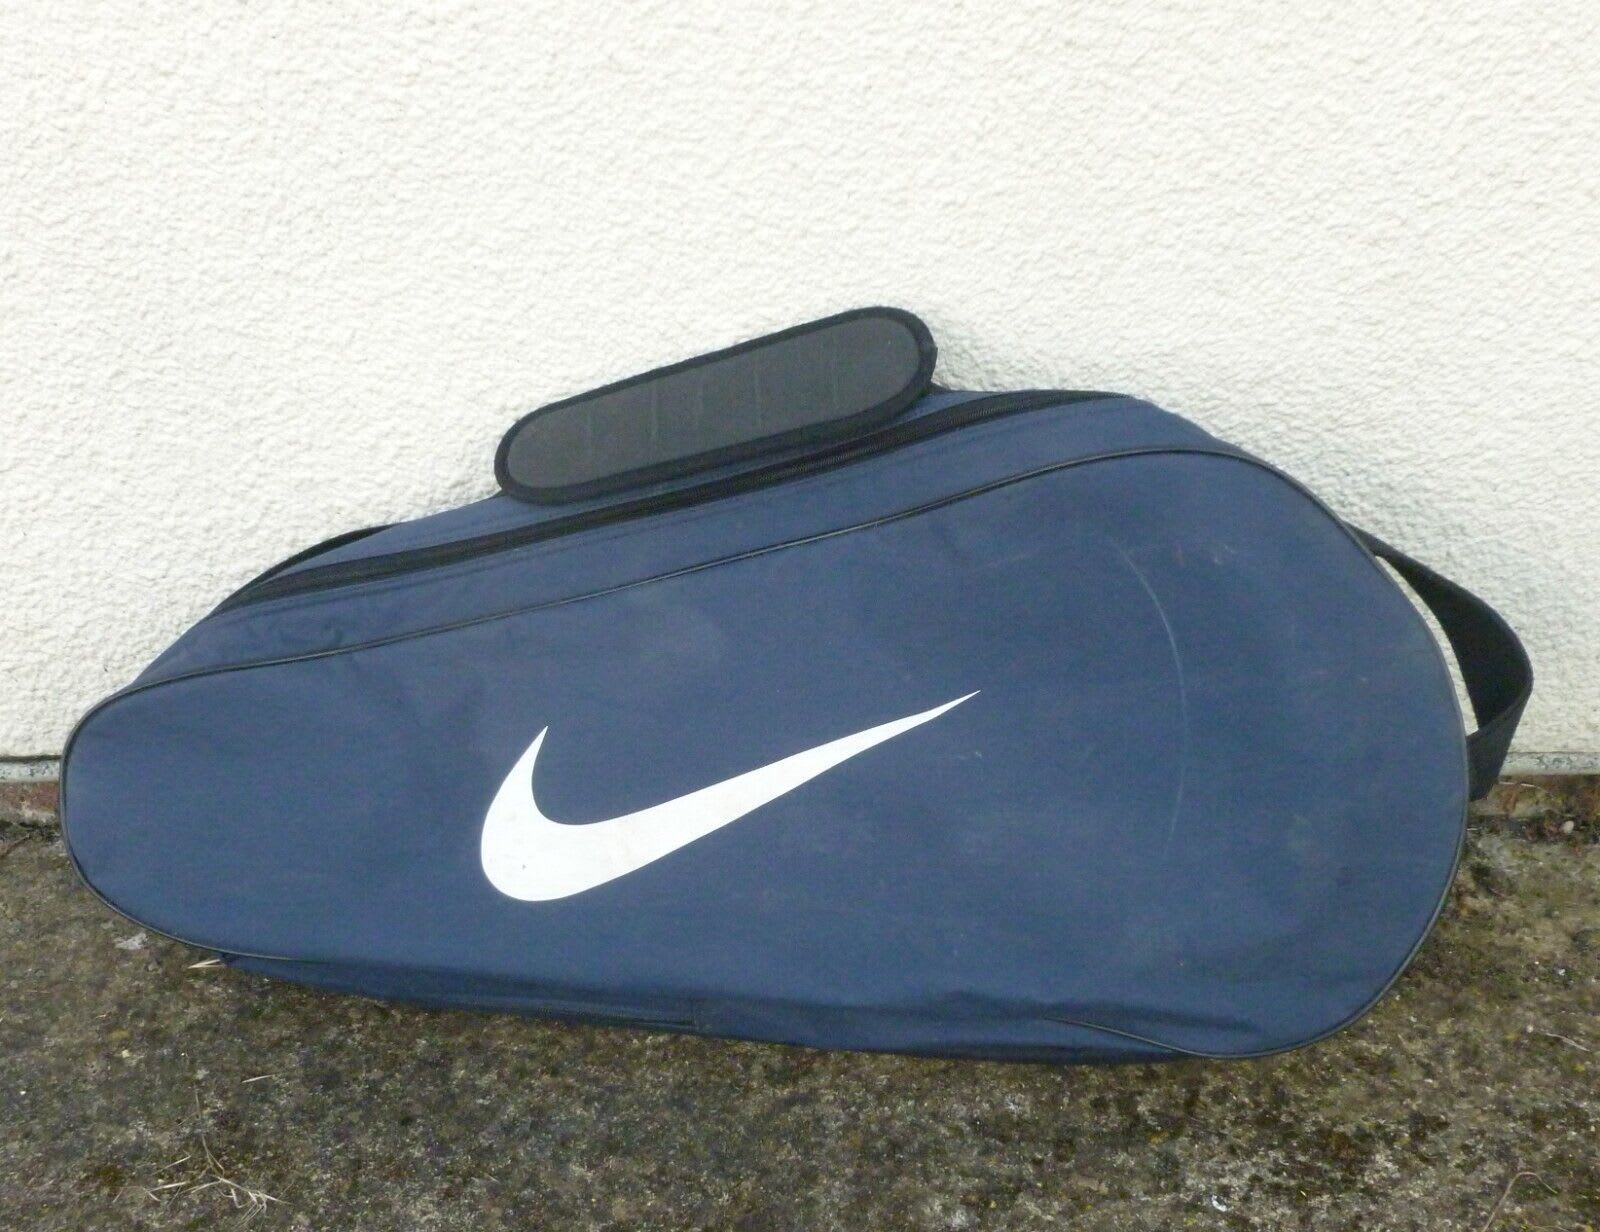 Navy pre-loved Nike tennis bag.